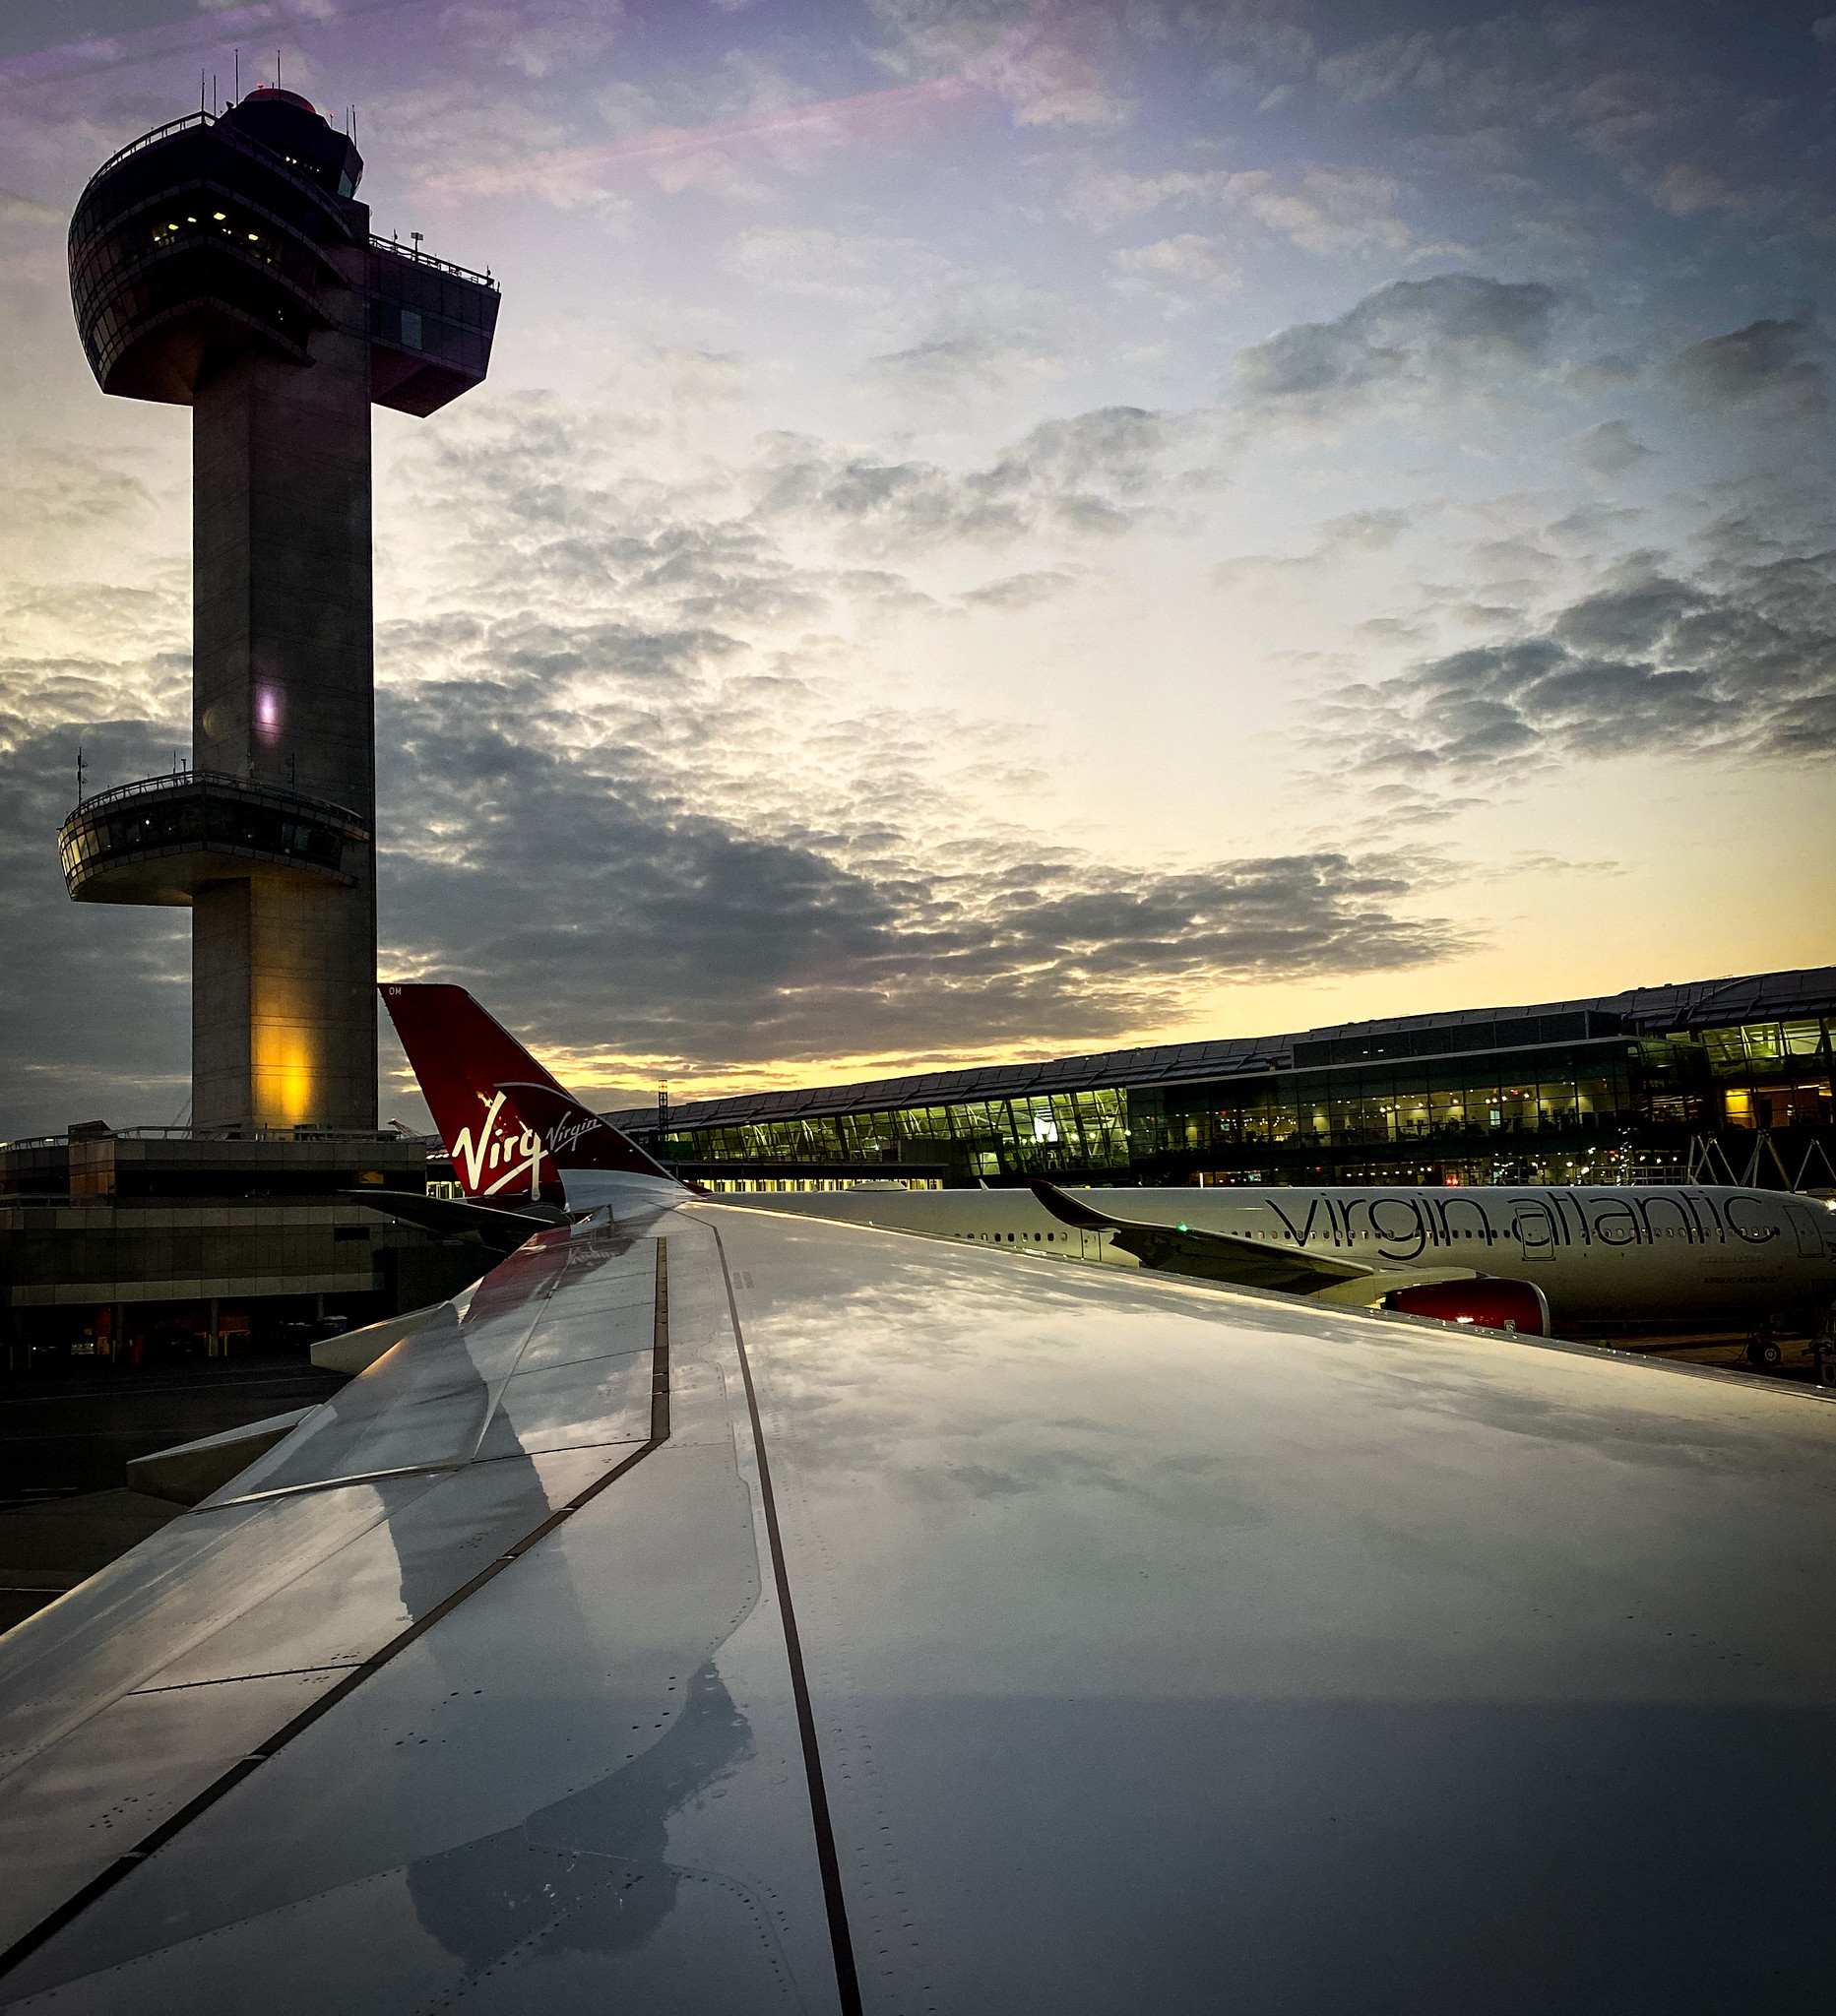 Virgin Atlantic JFK